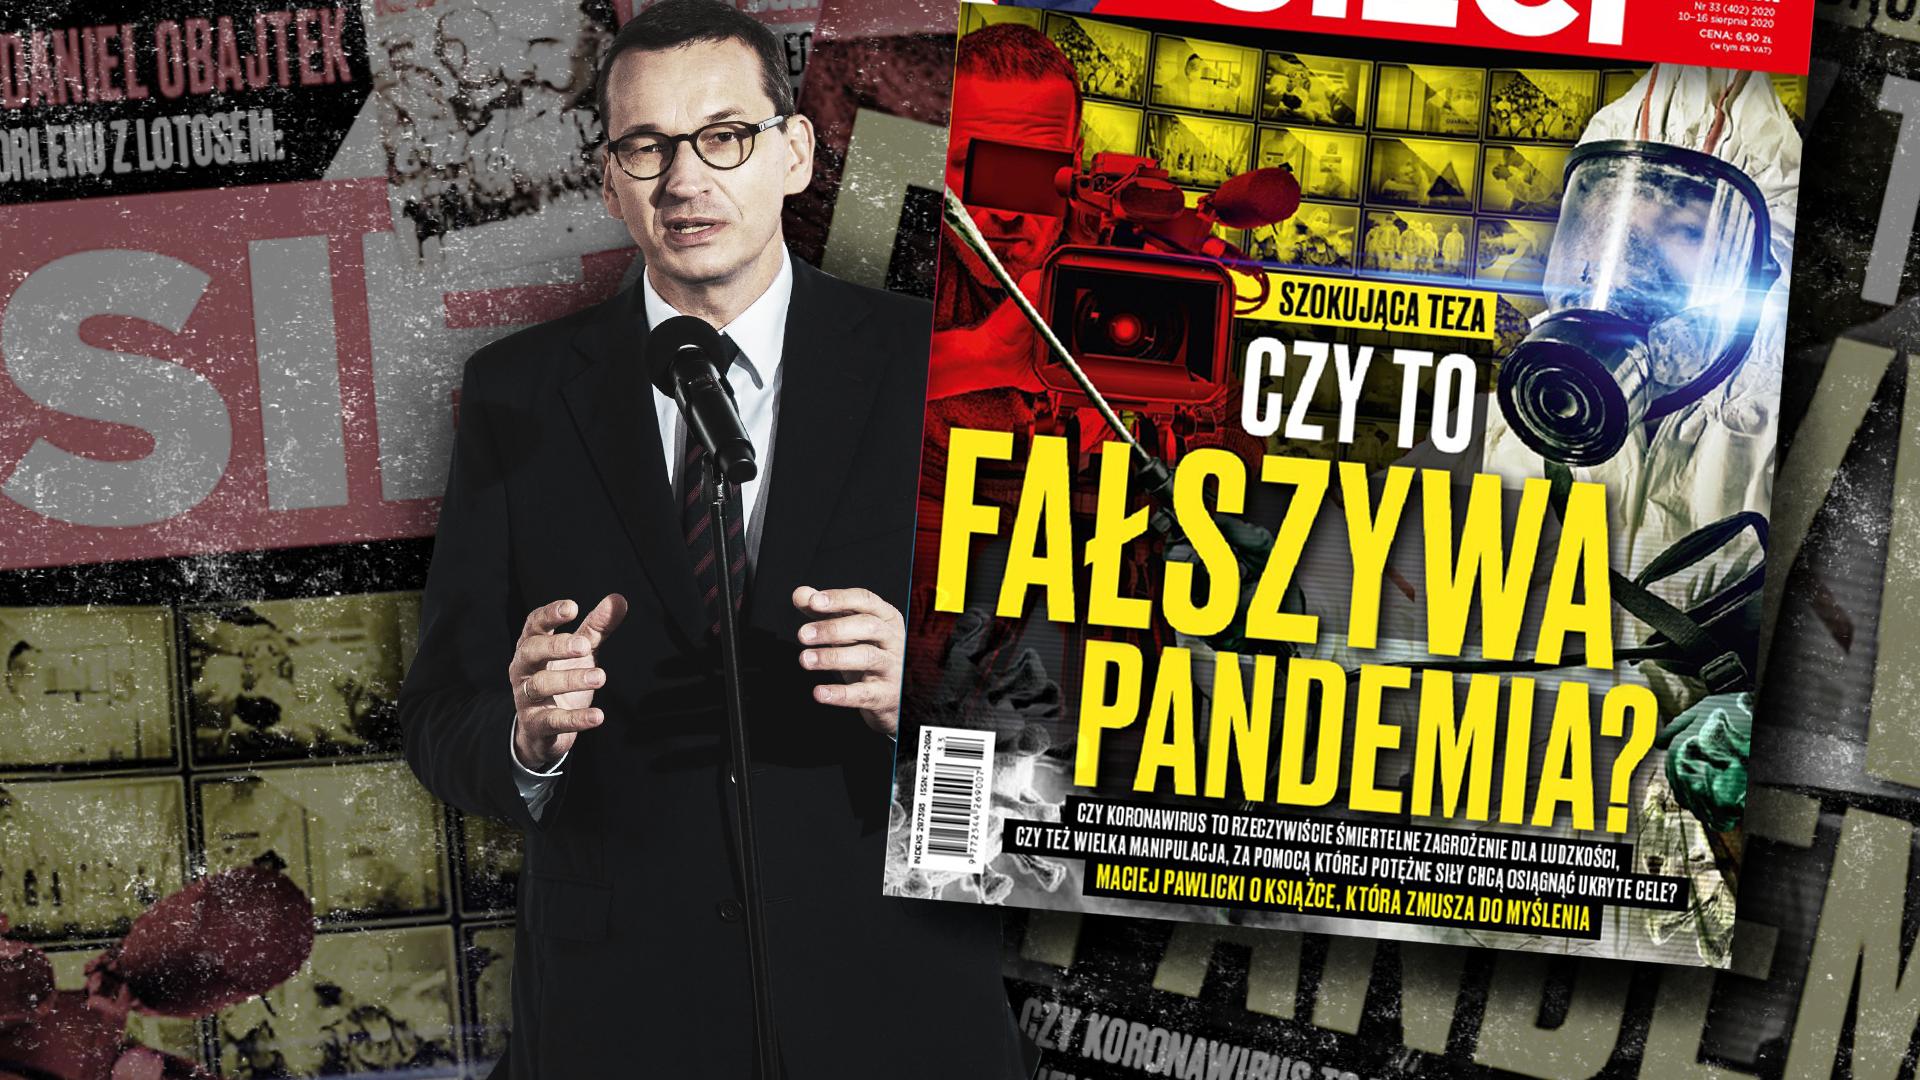 Mateusz Morawiecki z okładką tygodnika "wSieci" z tytułem: "Czy to fałszywa pandemia?"